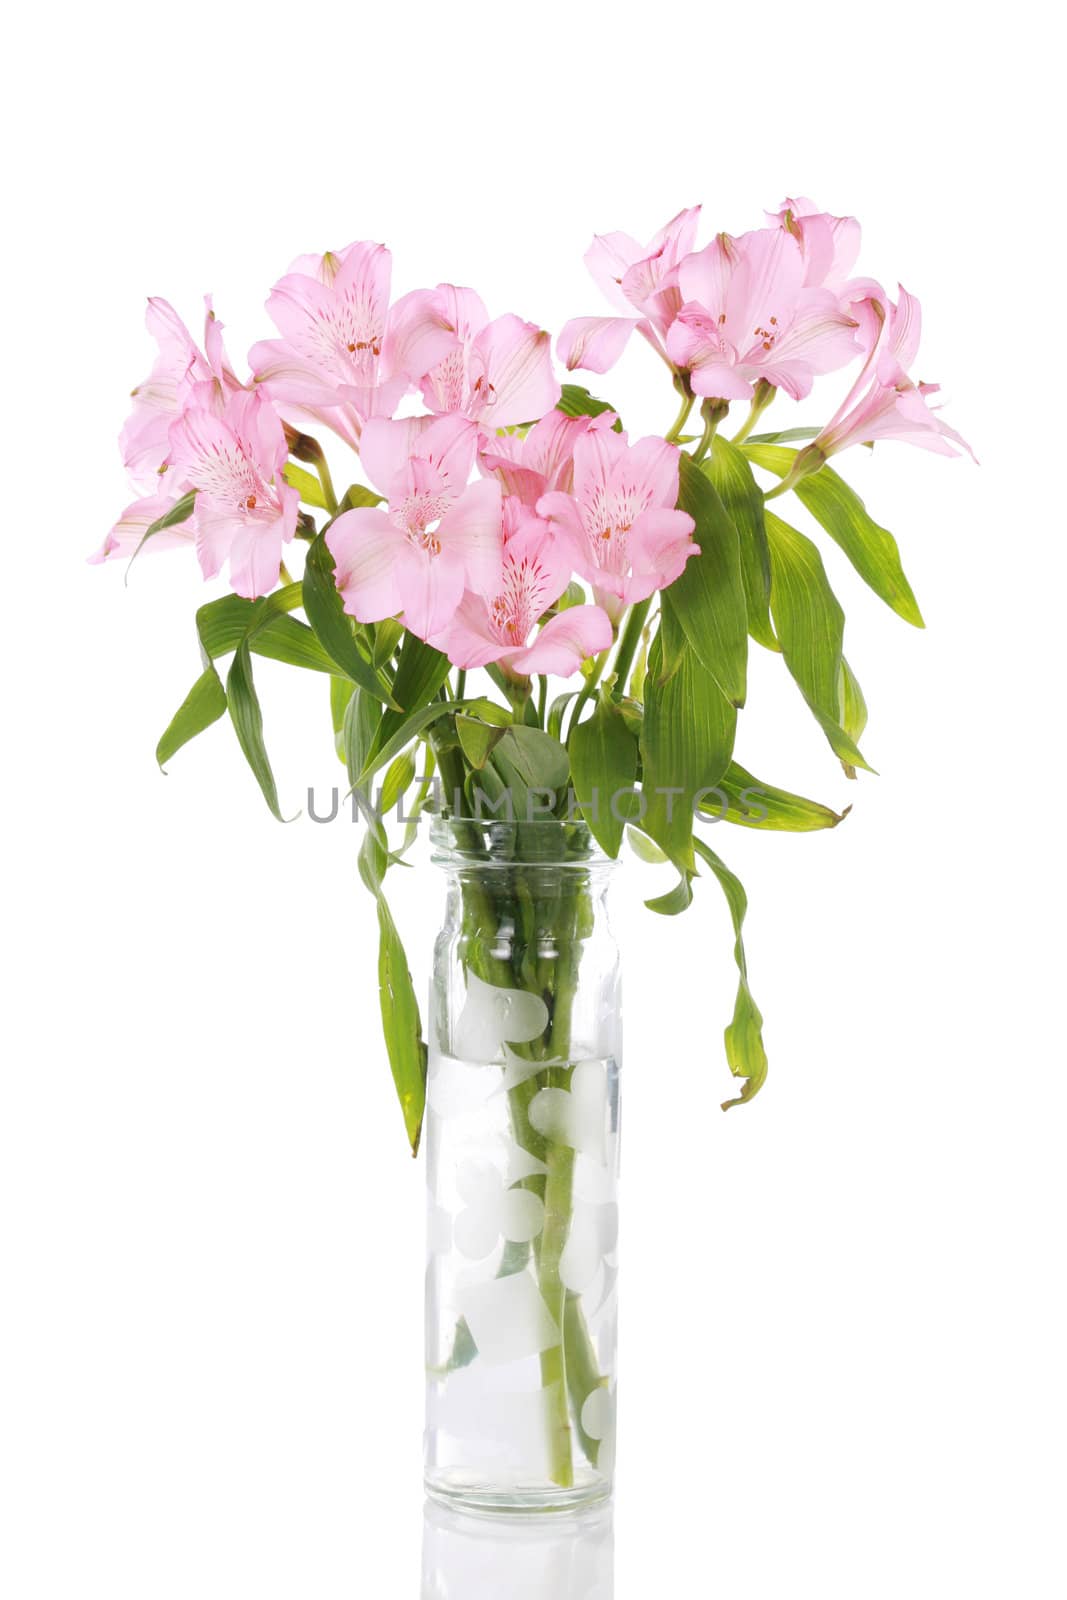 Vase of pink lilies by jarenwicklund